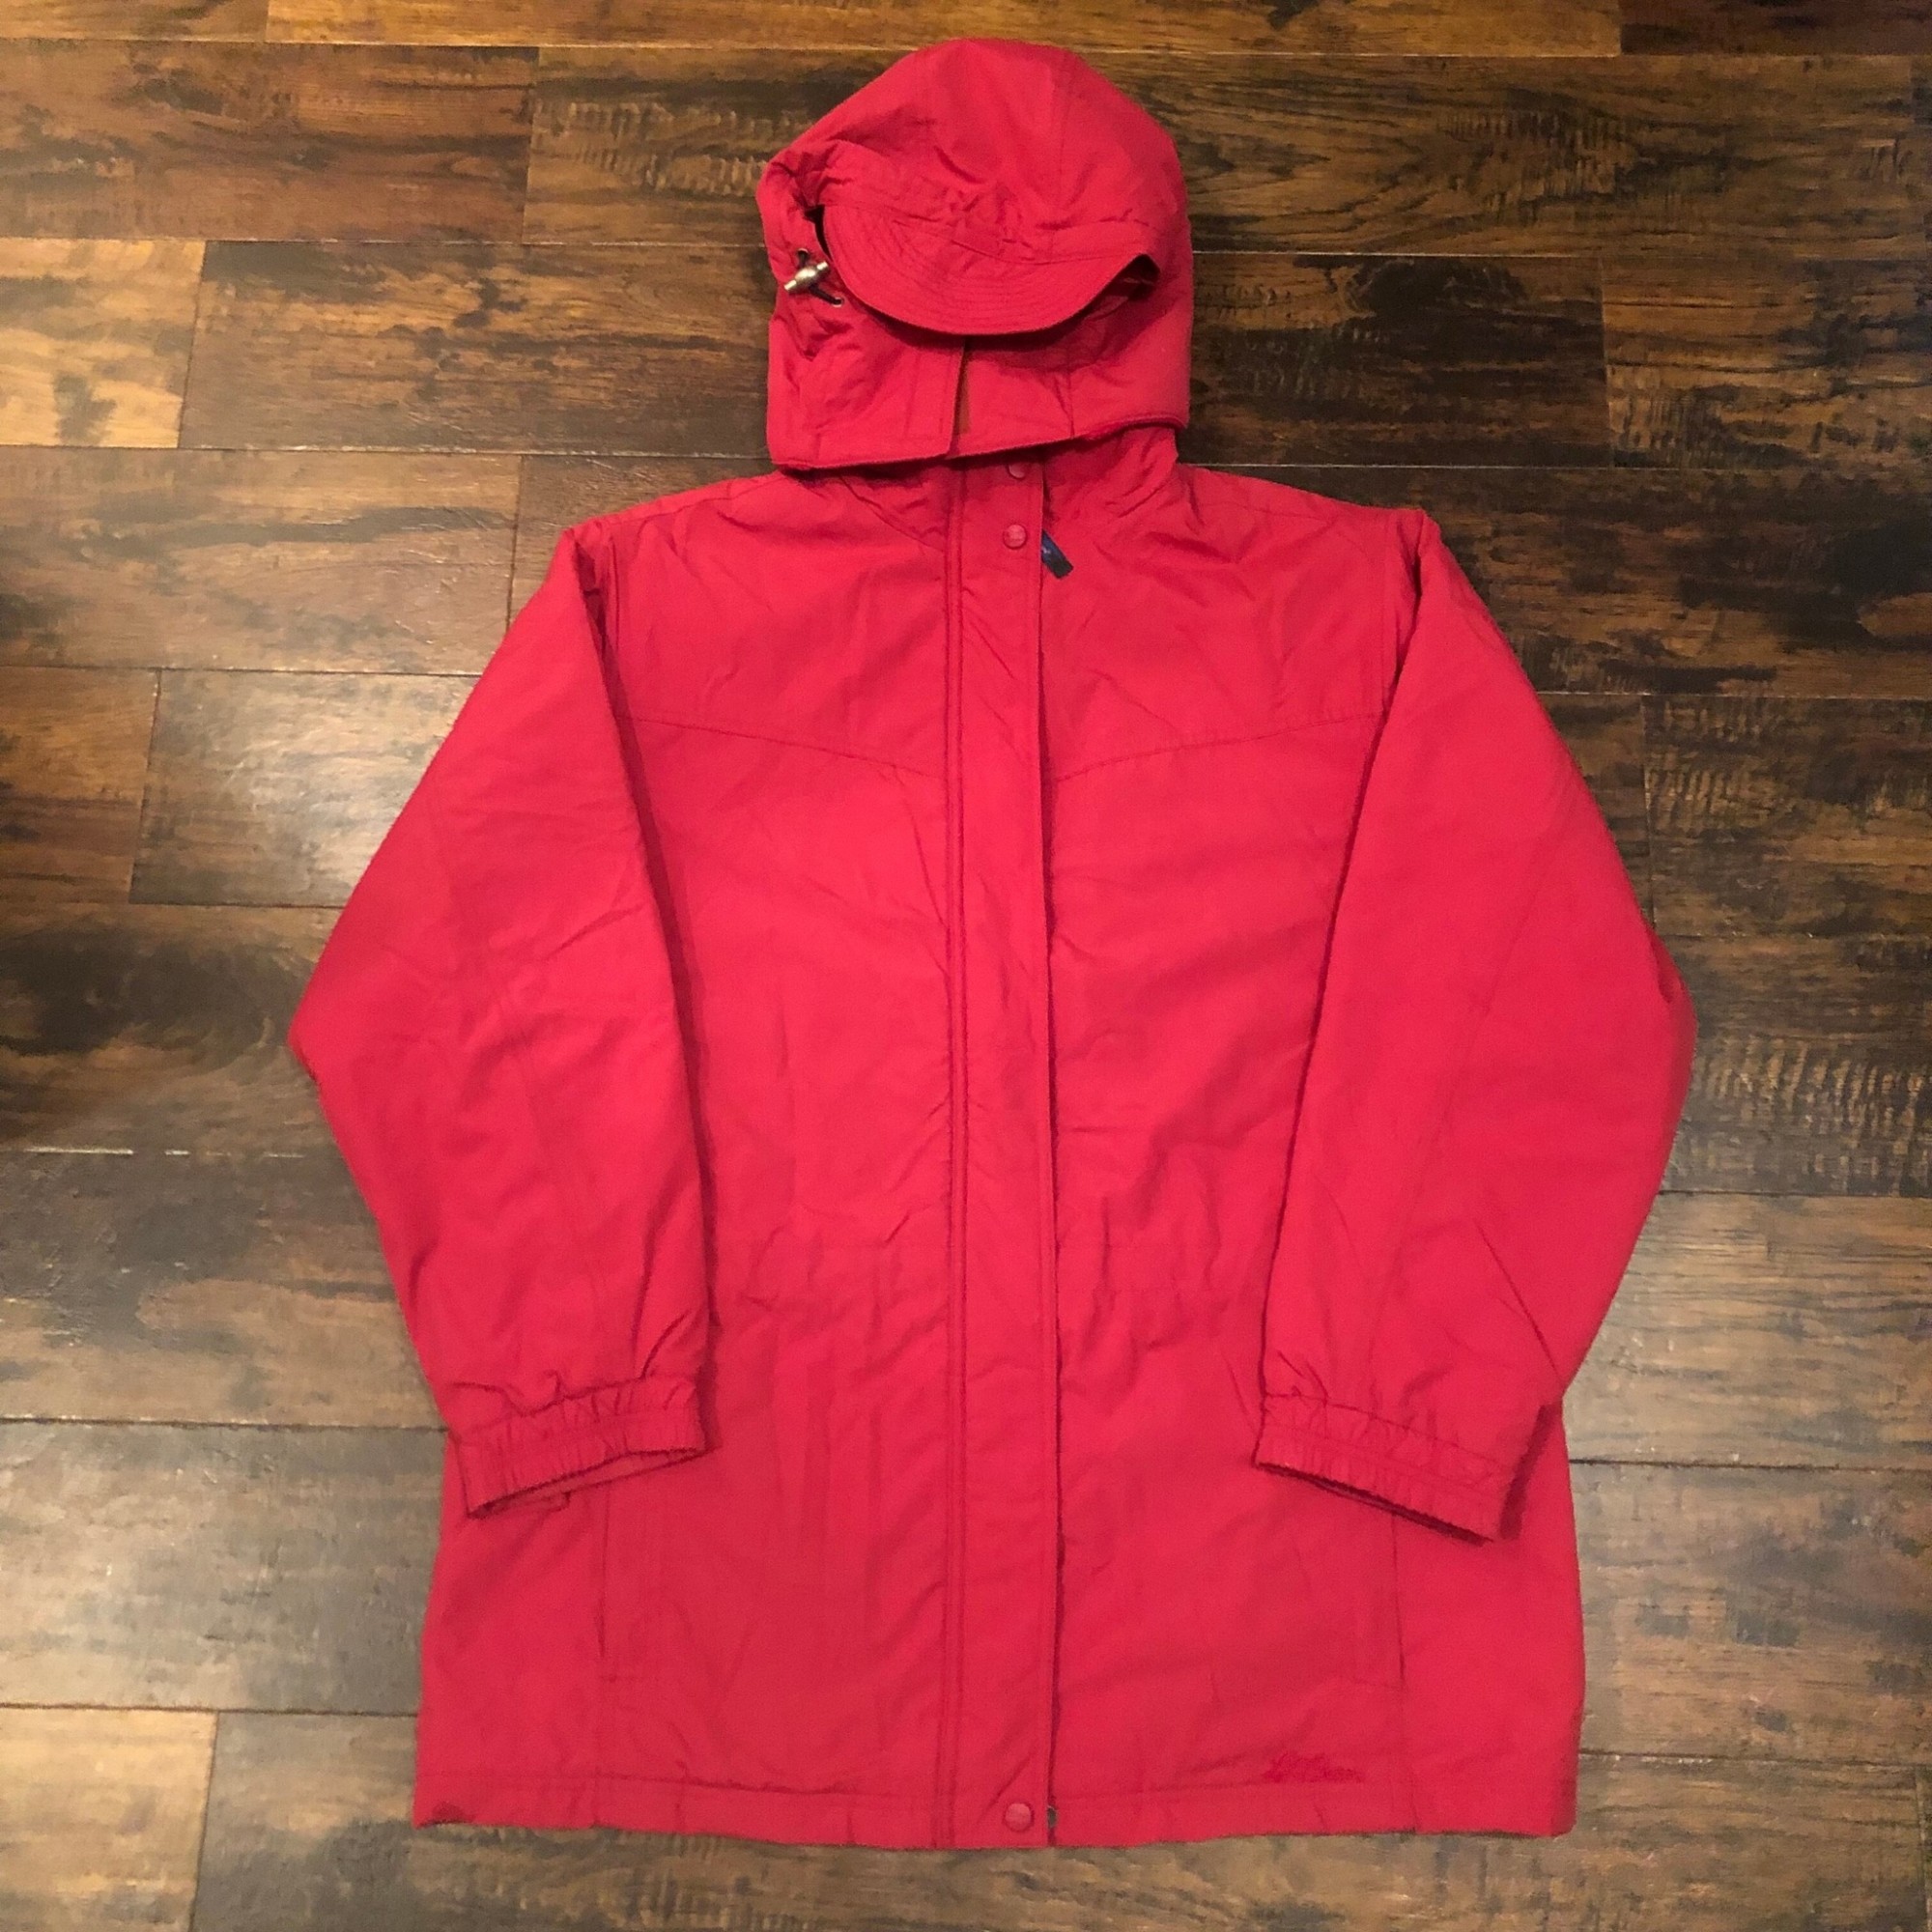 90s L.L. Bean/Inner bore Nylon jacket